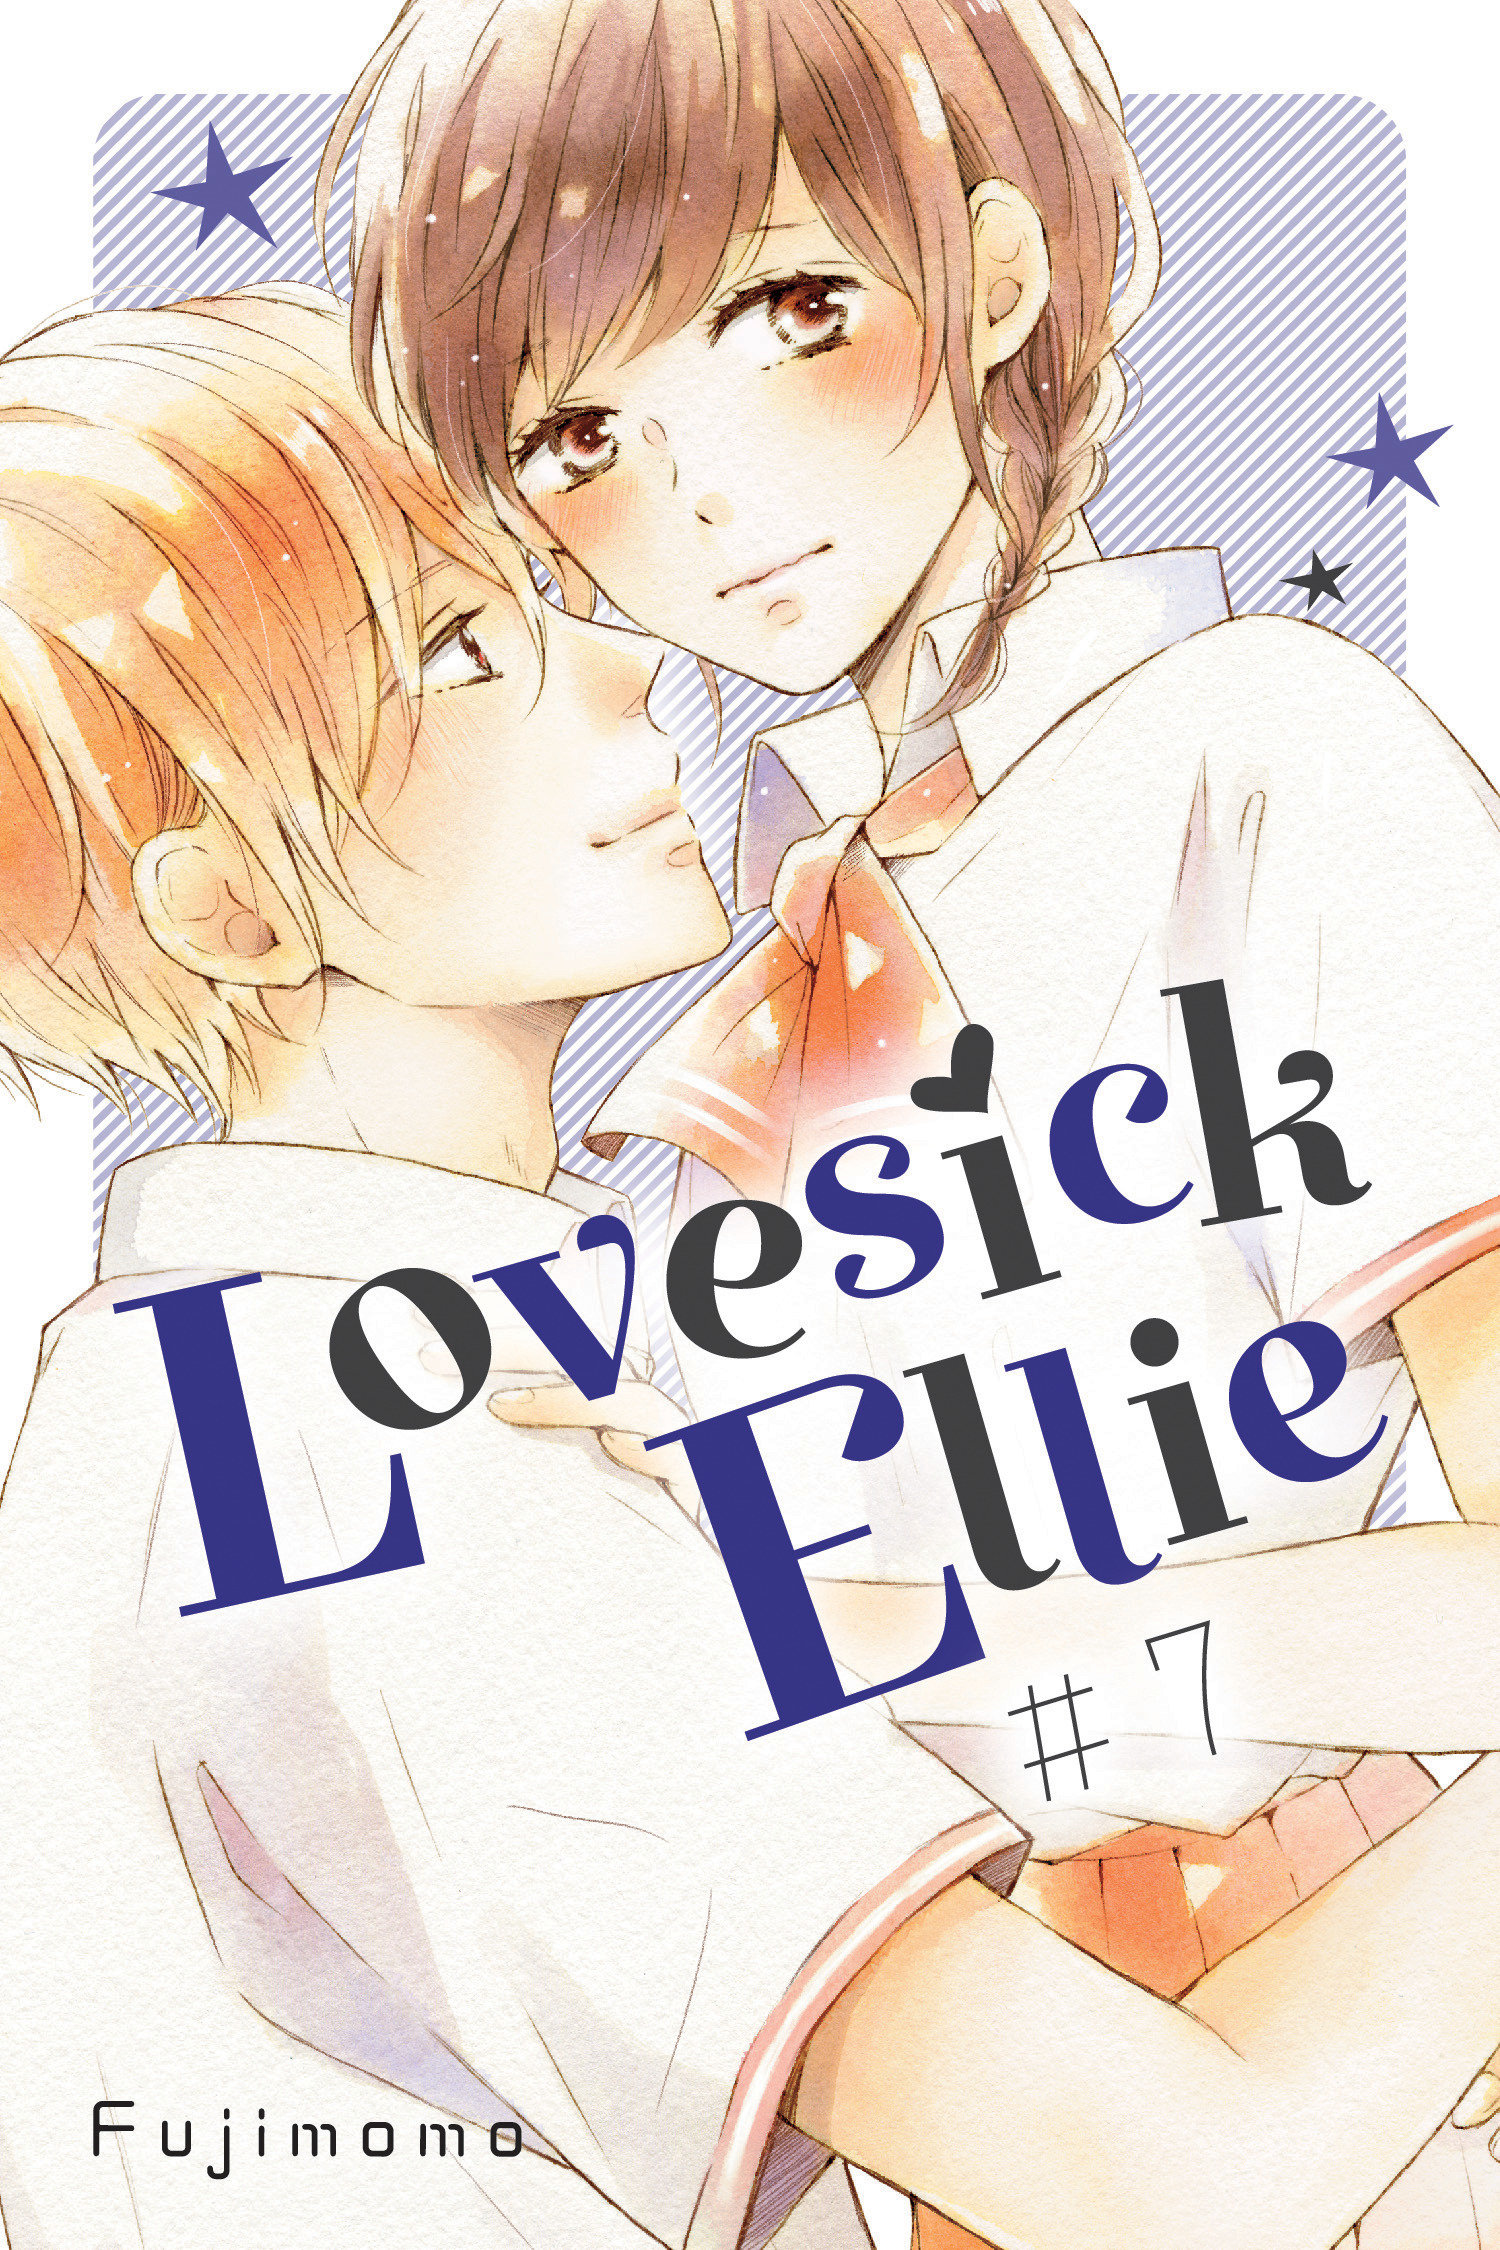 Lovesick Ellie Manga Volume 7